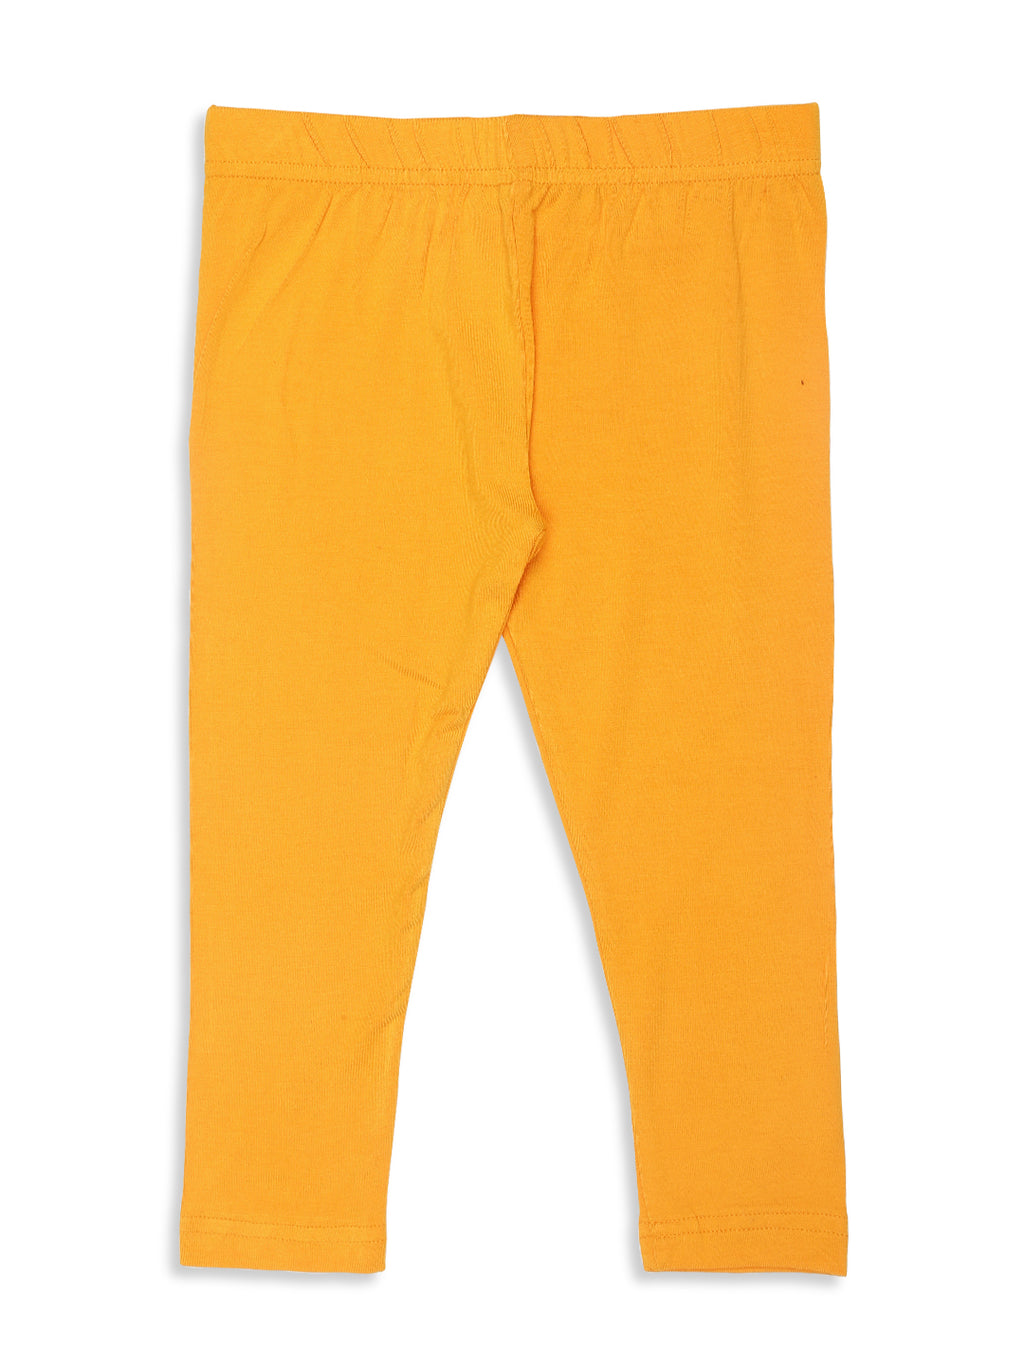 Order Sundae Premium Quality Full Length Leggings Yellow Color Online From  VISHAL KIDS WORLD,NAGPUR